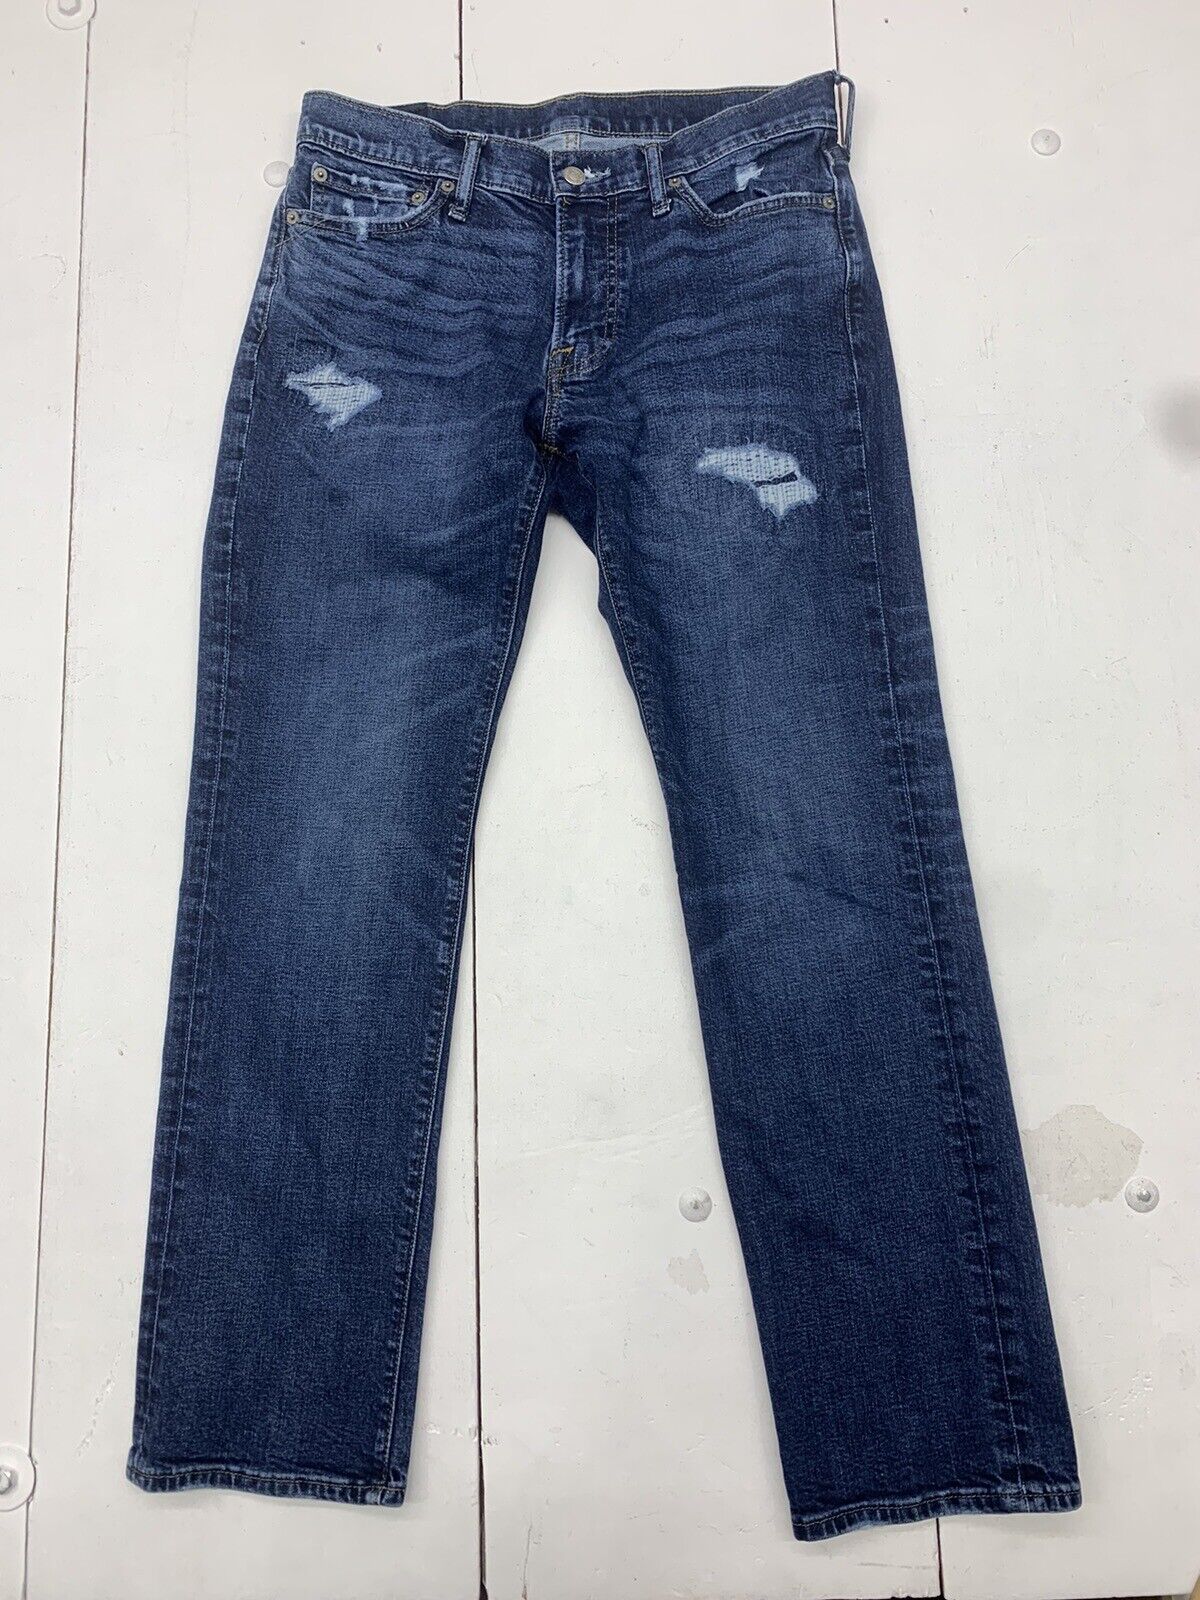 Abercrombie Fitch Women's Jeans Size 00 Short Denim Light Wash